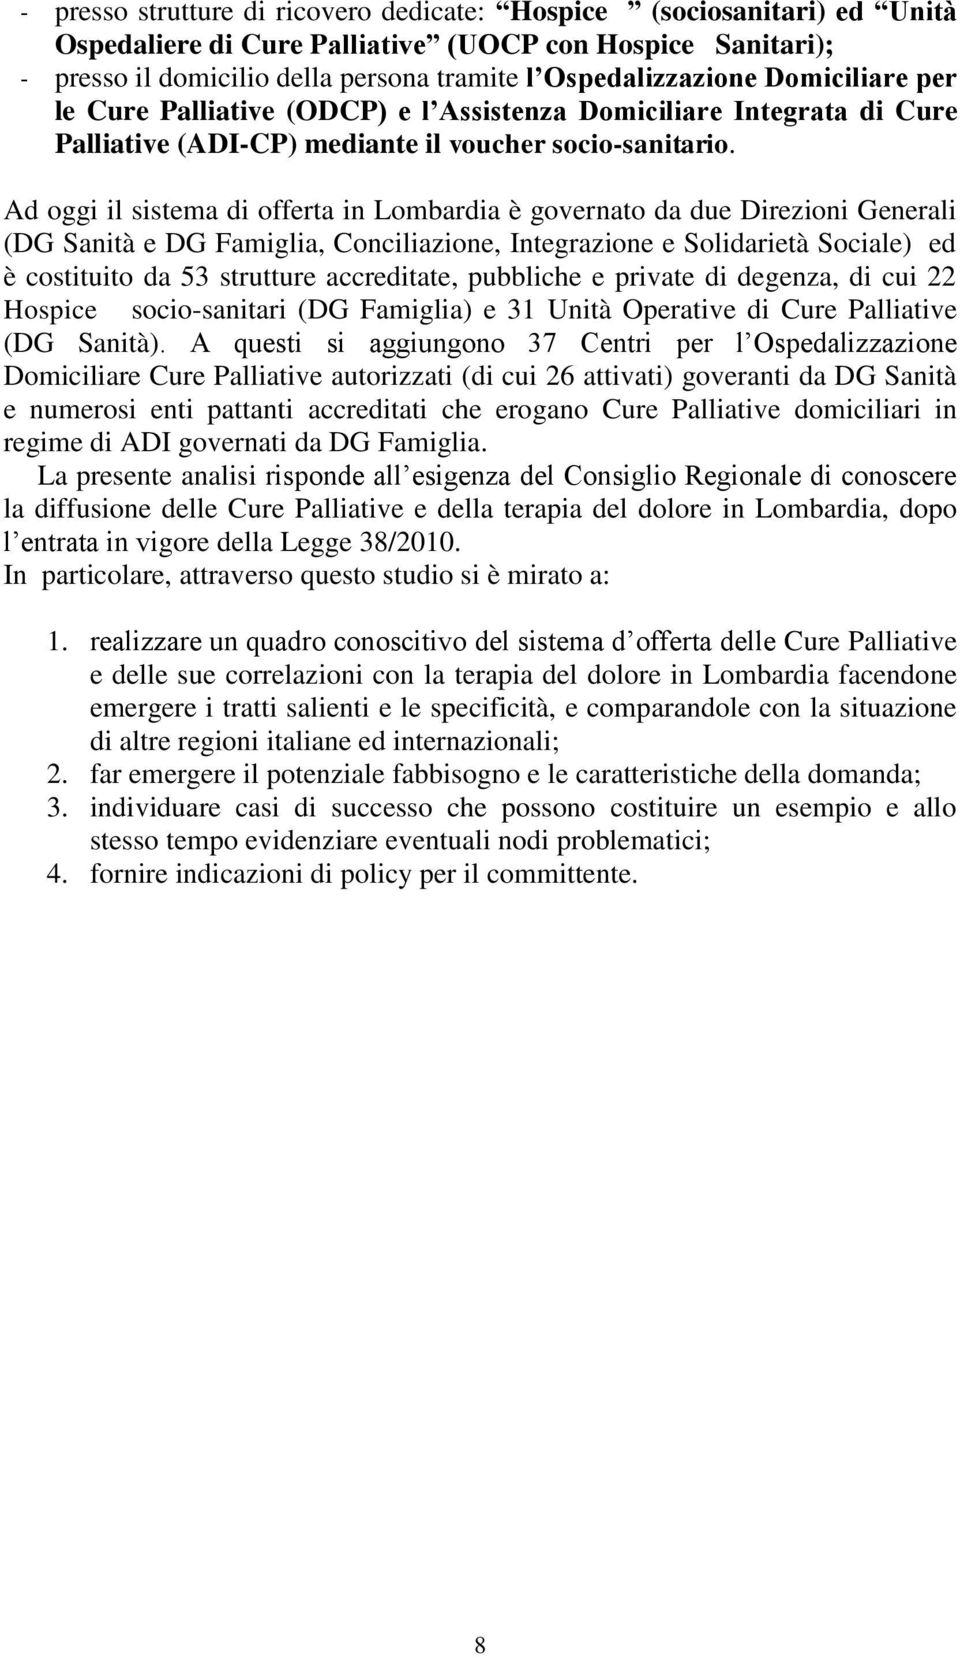 Ad oggi il sistema di offerta in Lombardia è governato da due Direzioni Generali (DG Sanità e DG Famiglia, Conciliazione, Integrazione e Solidarietà Sociale) ed è costituito da 53 strutture